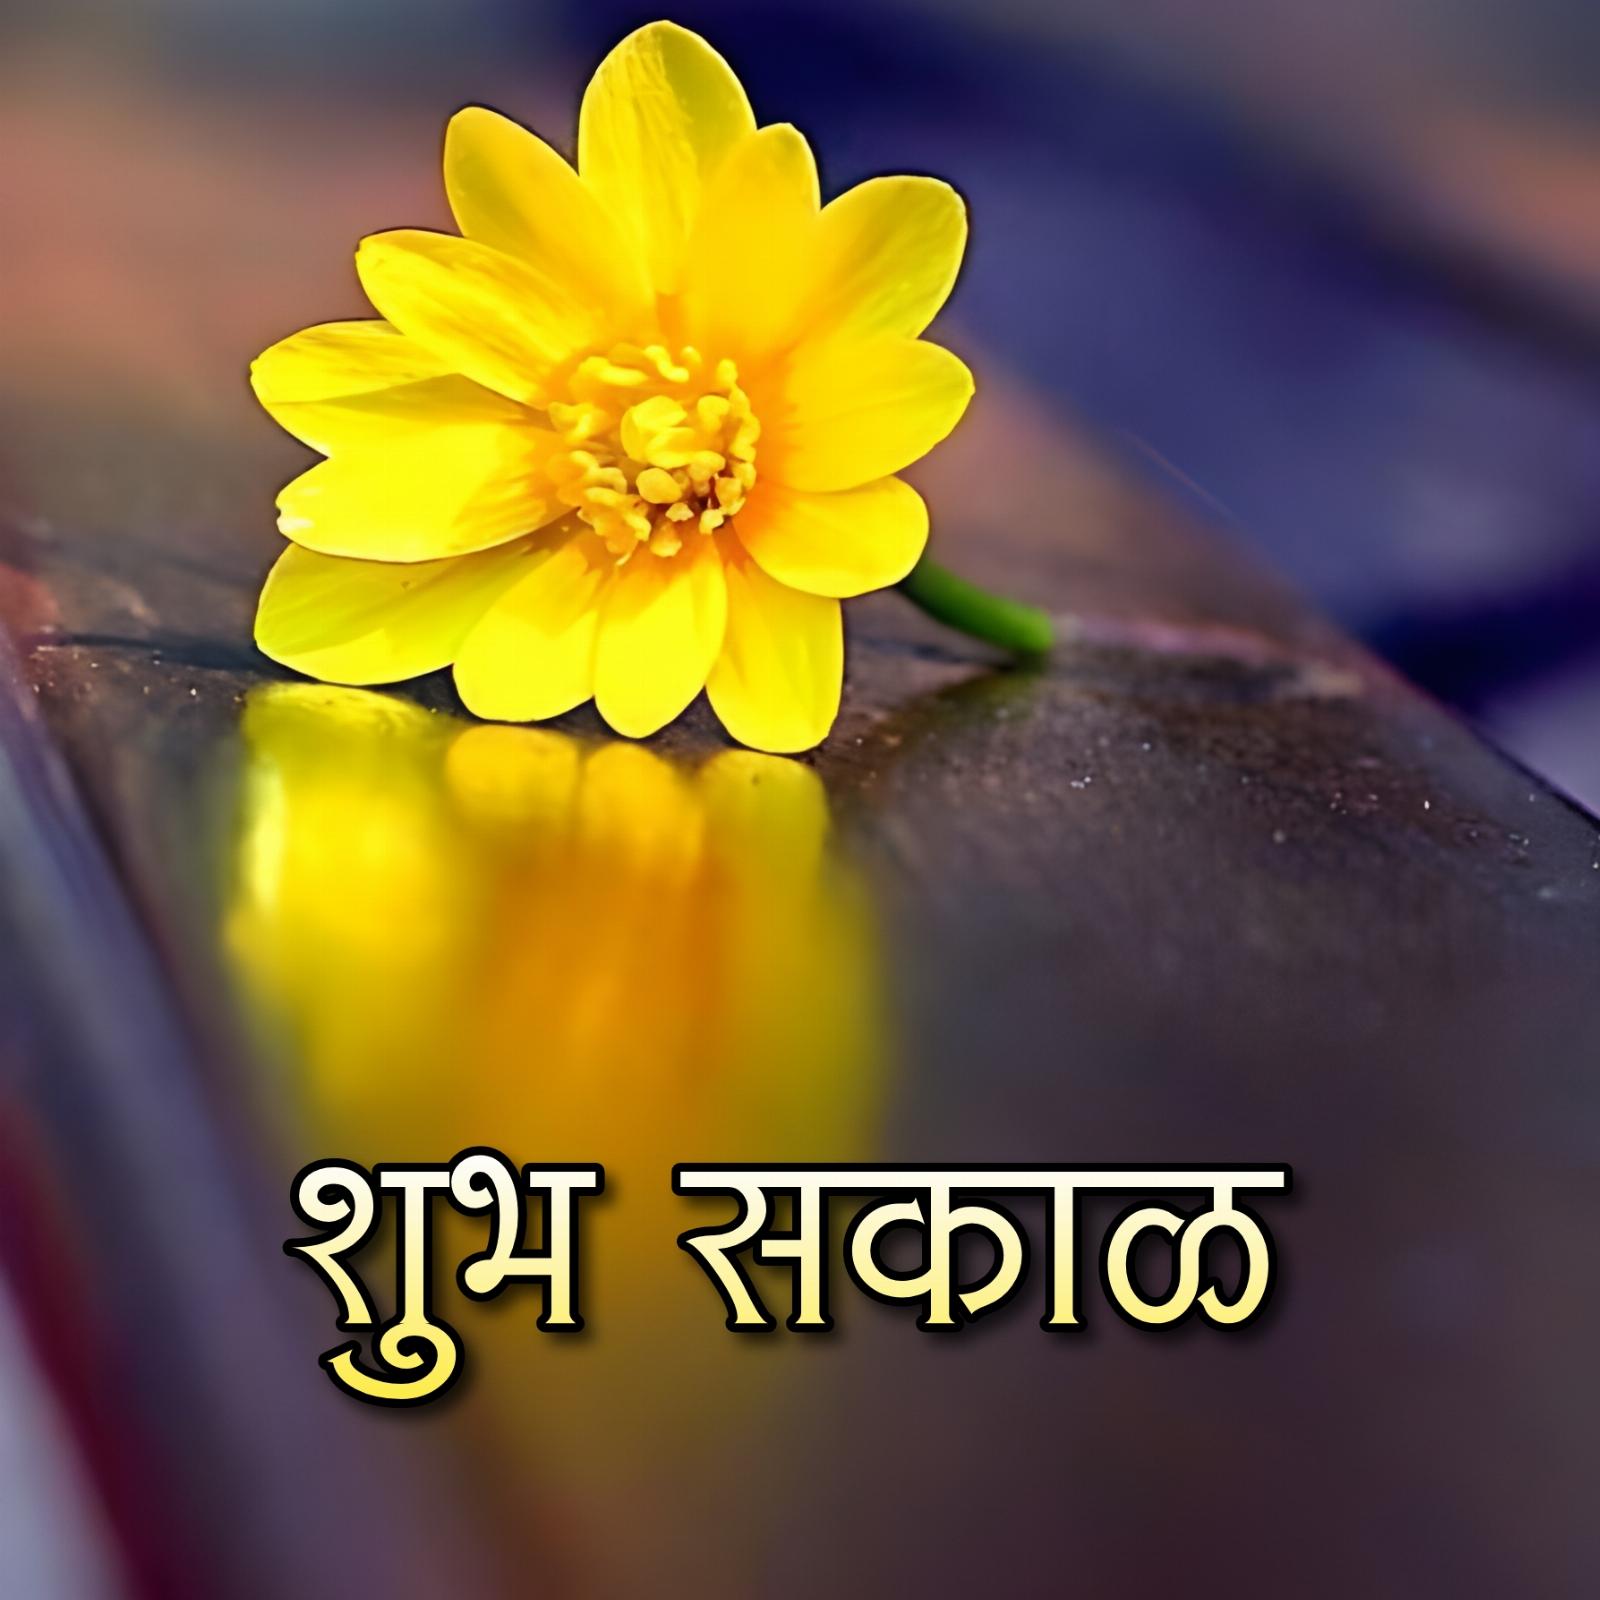 Shubh Sakal Flower Images Free Download